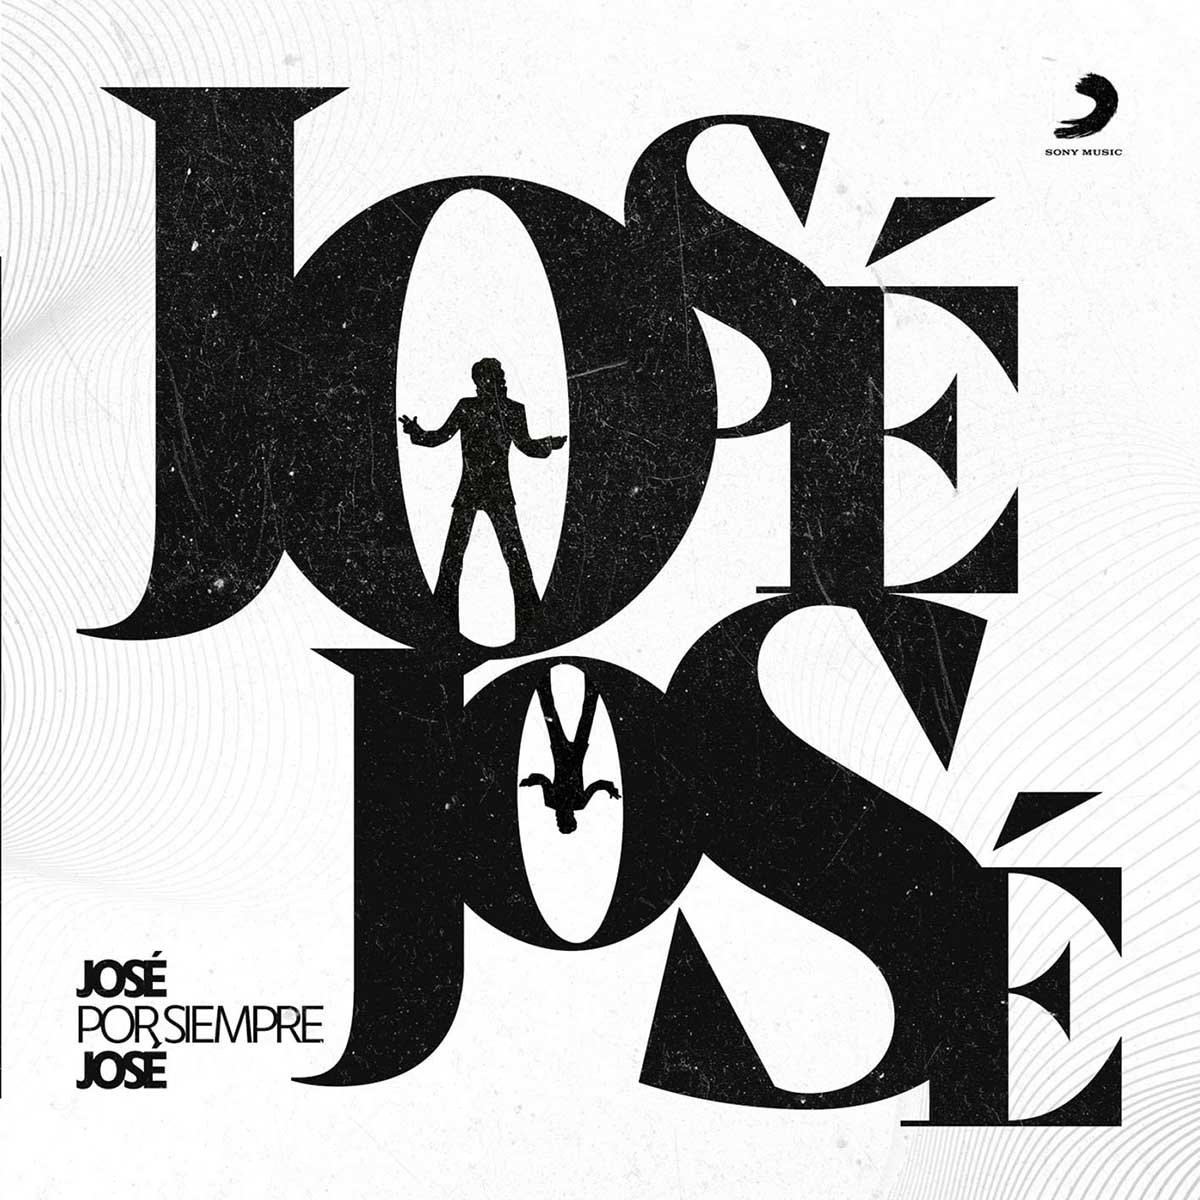 Cd José José, José por Siempre Jose